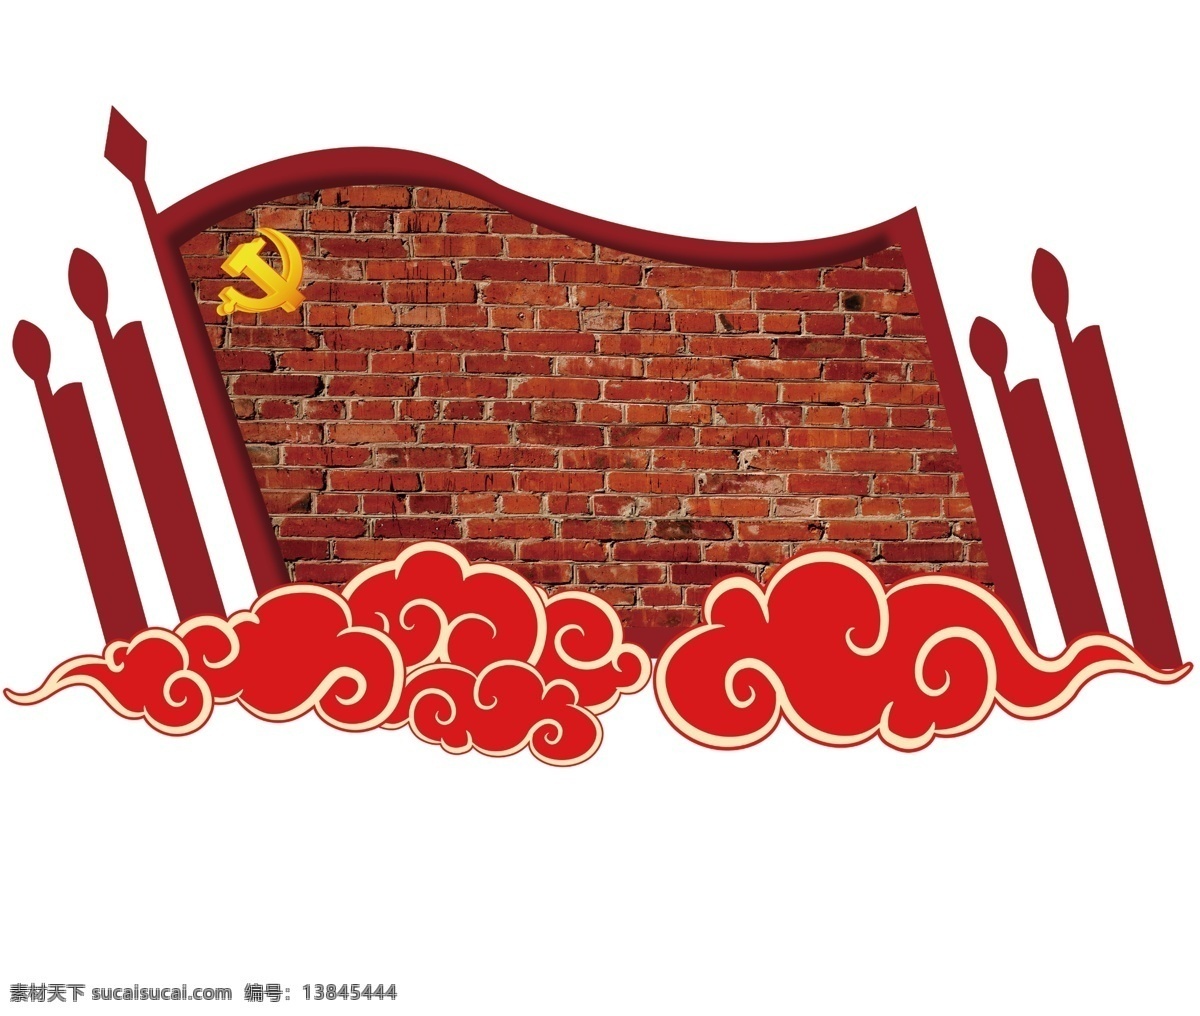 革命历程 历史 红砖 文化墙 红色文化墙